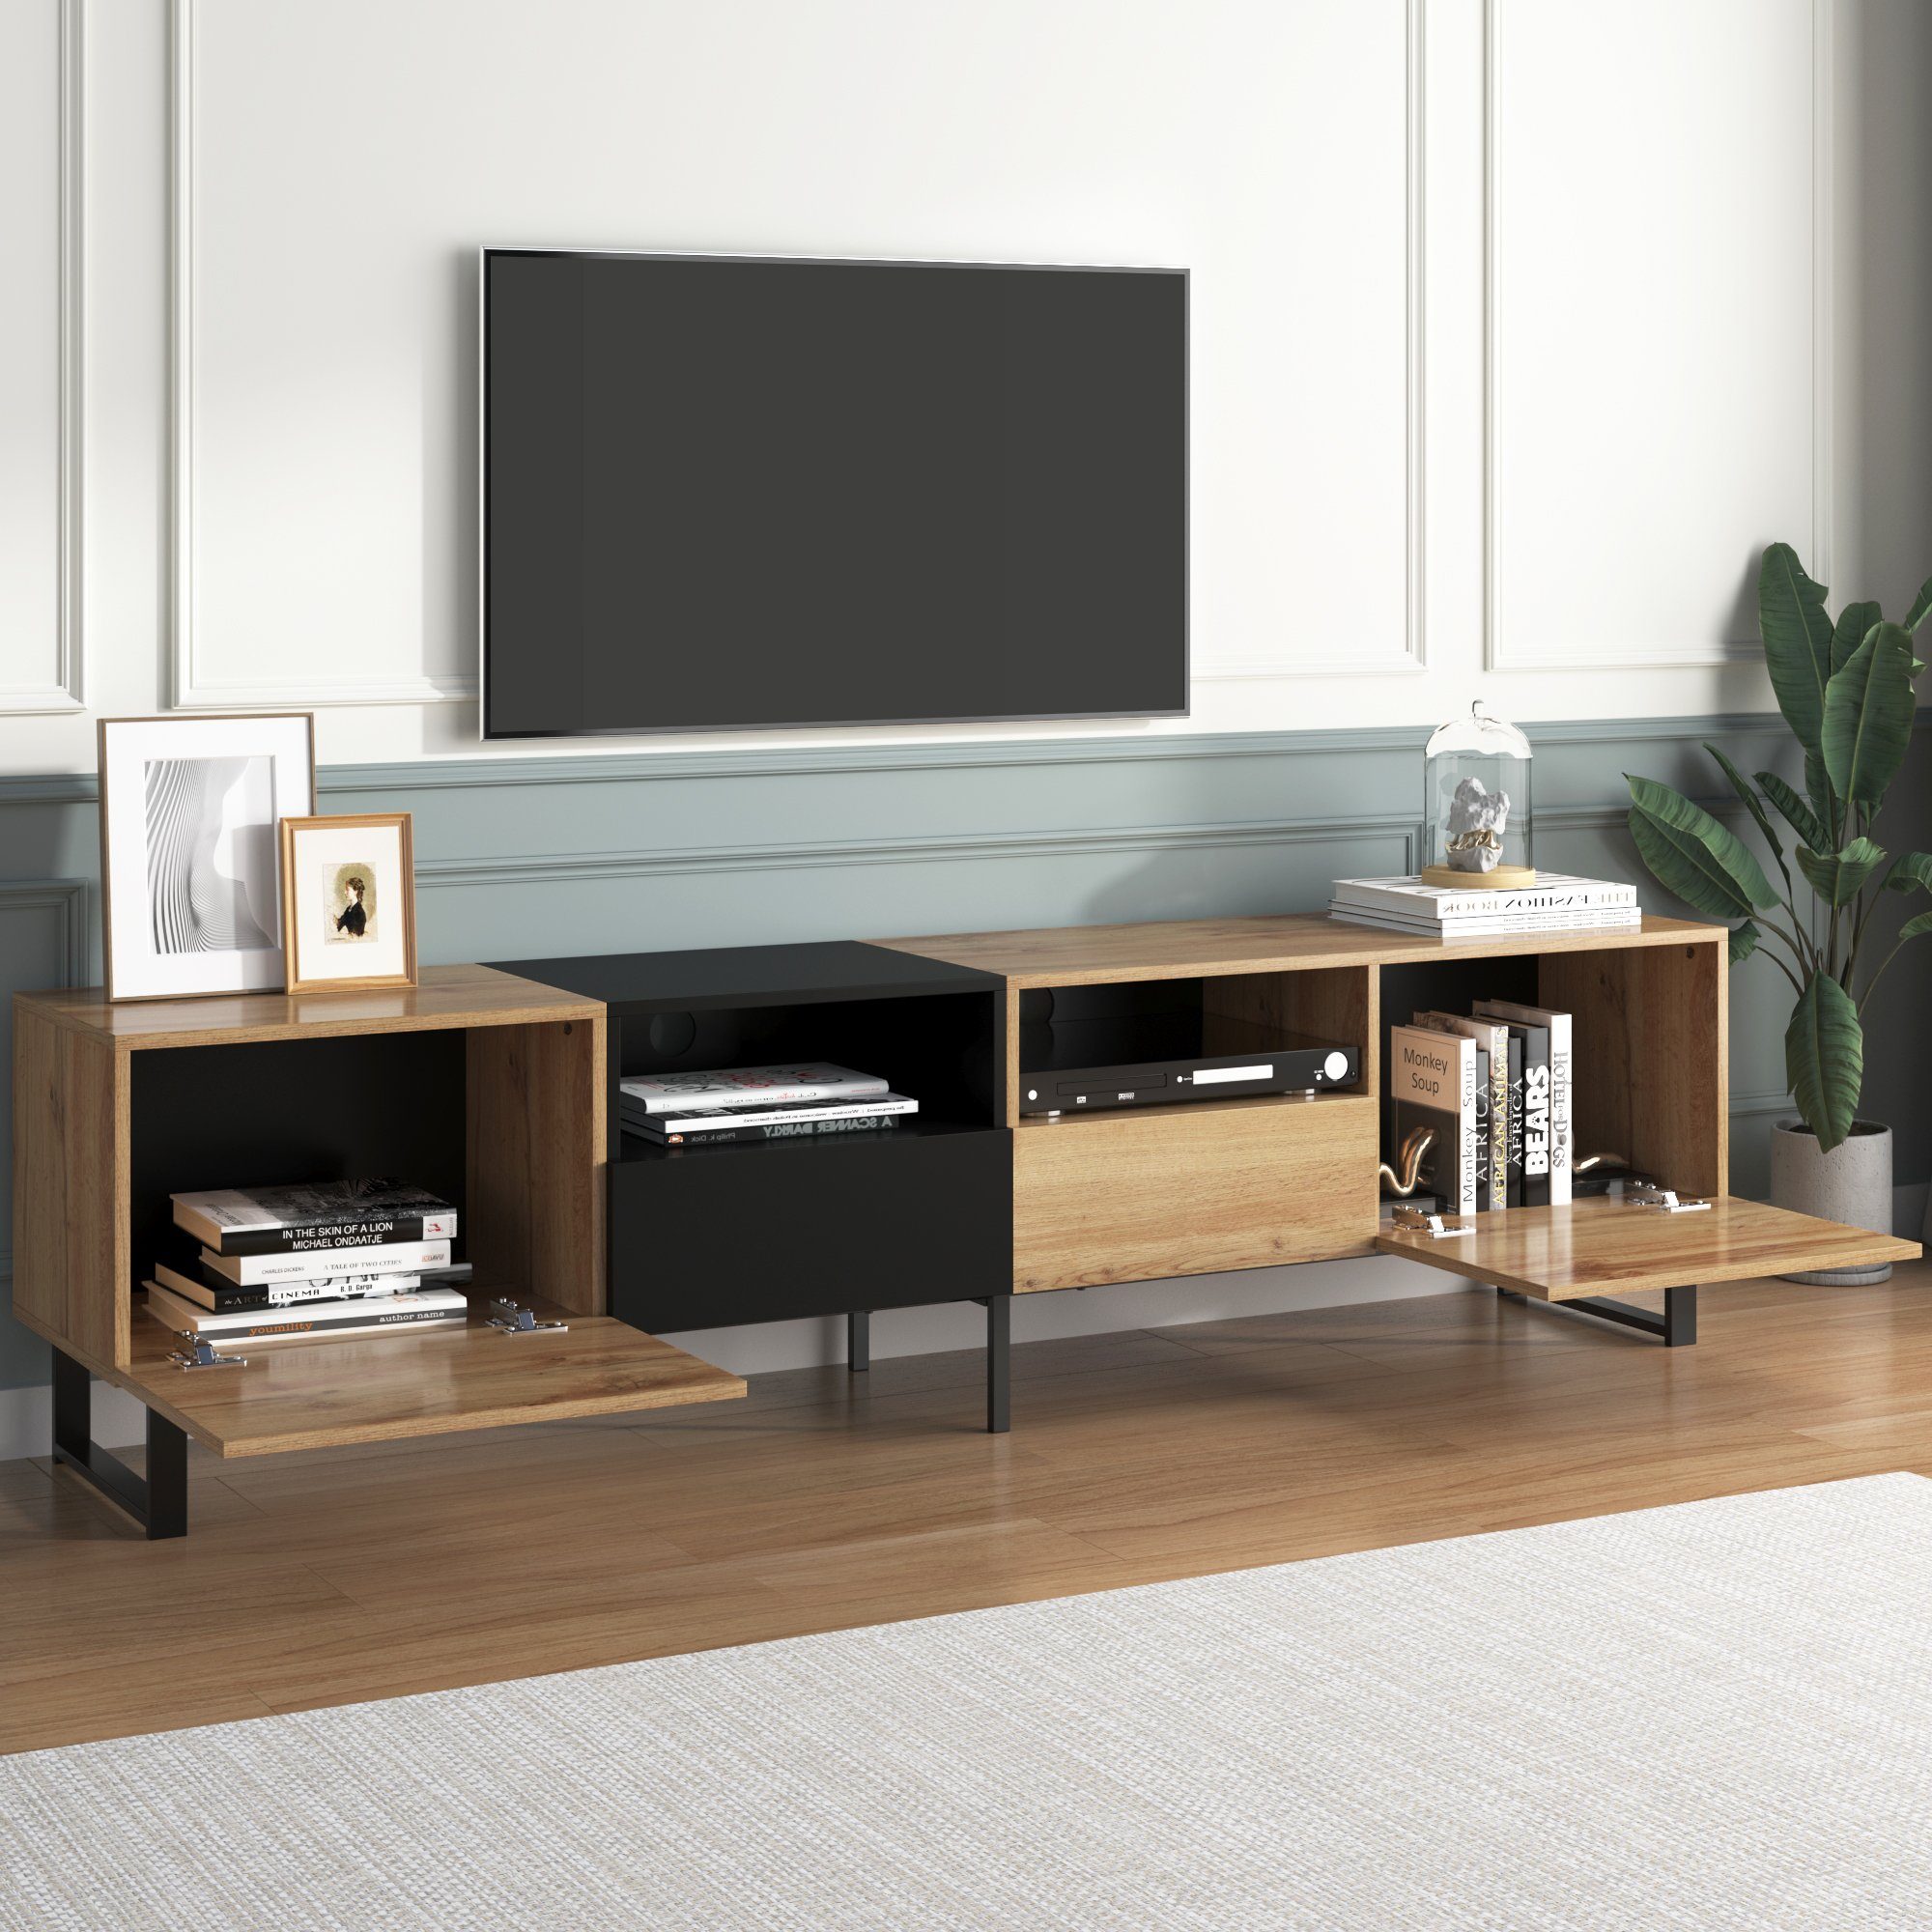 38 TV-Schrank mit Stauraum, robuste 48 190 cm x cm (geräumiger REDOM cm und holzfarbenem Design, x Konstruktion) schwarzem TV-Ständer